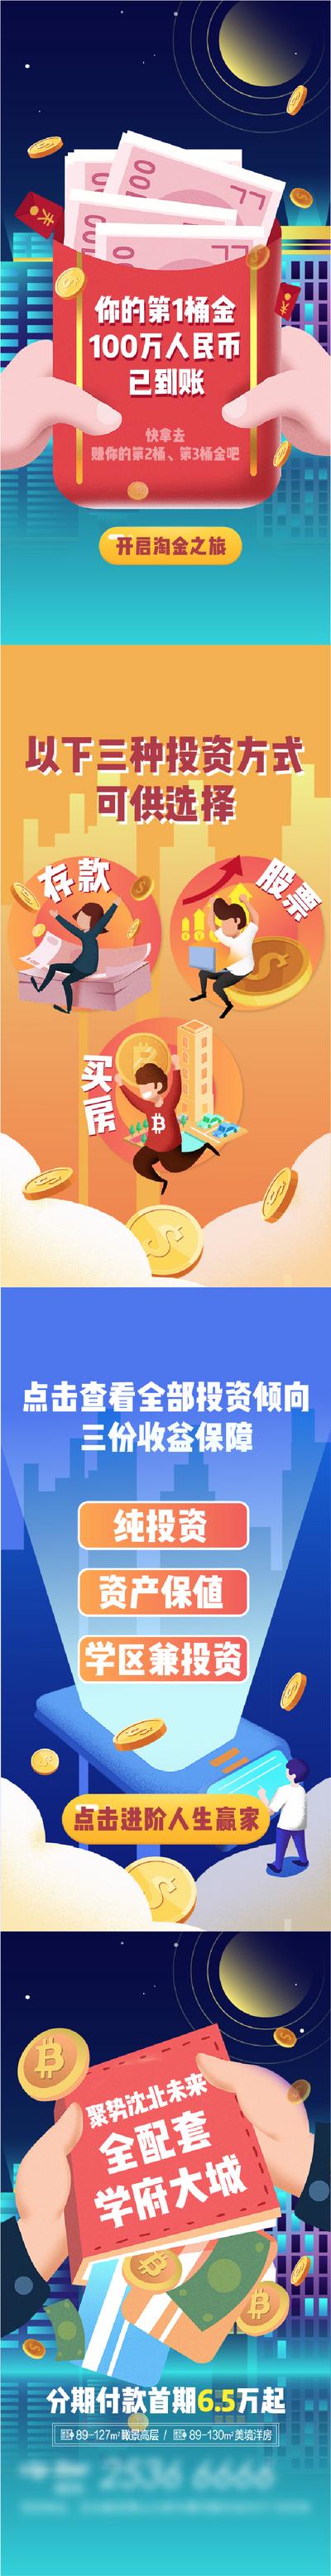 南门网 广告 海报 web 金融 h5 财务 理财 活动 投资 理财 财富